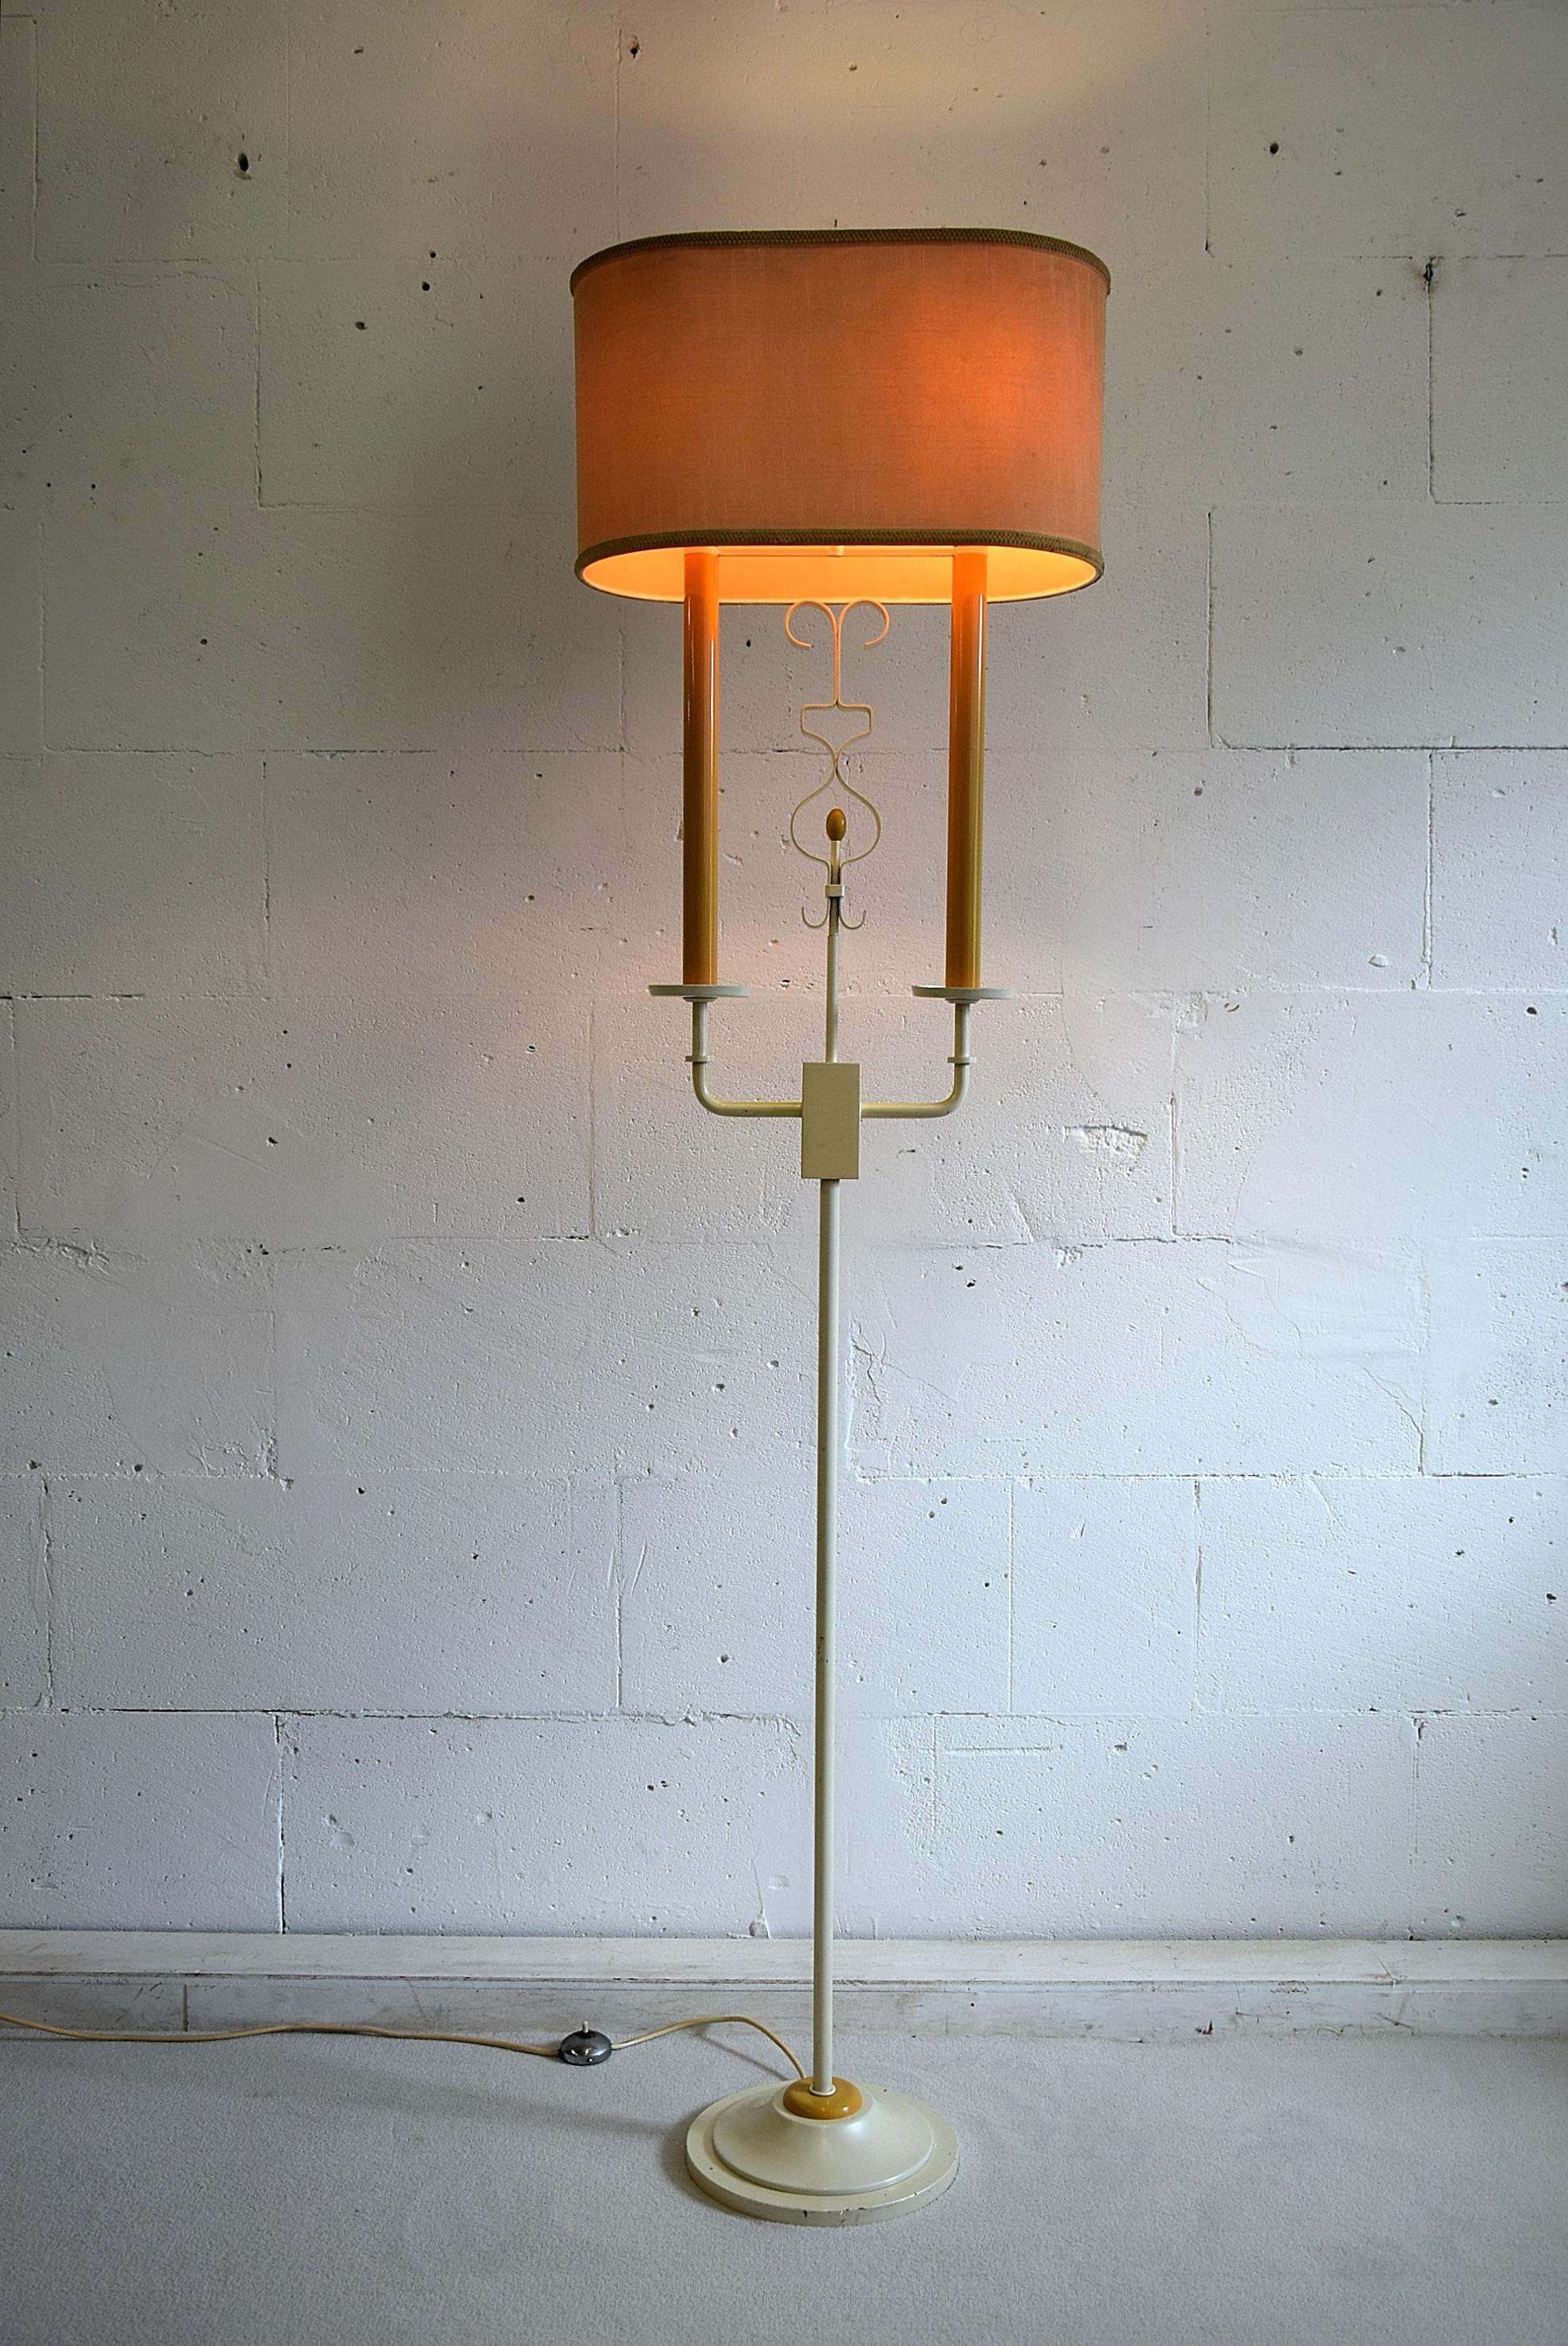 Italian Midcentury Floor Lamp by Stilnovo, 1960s For Sale 6